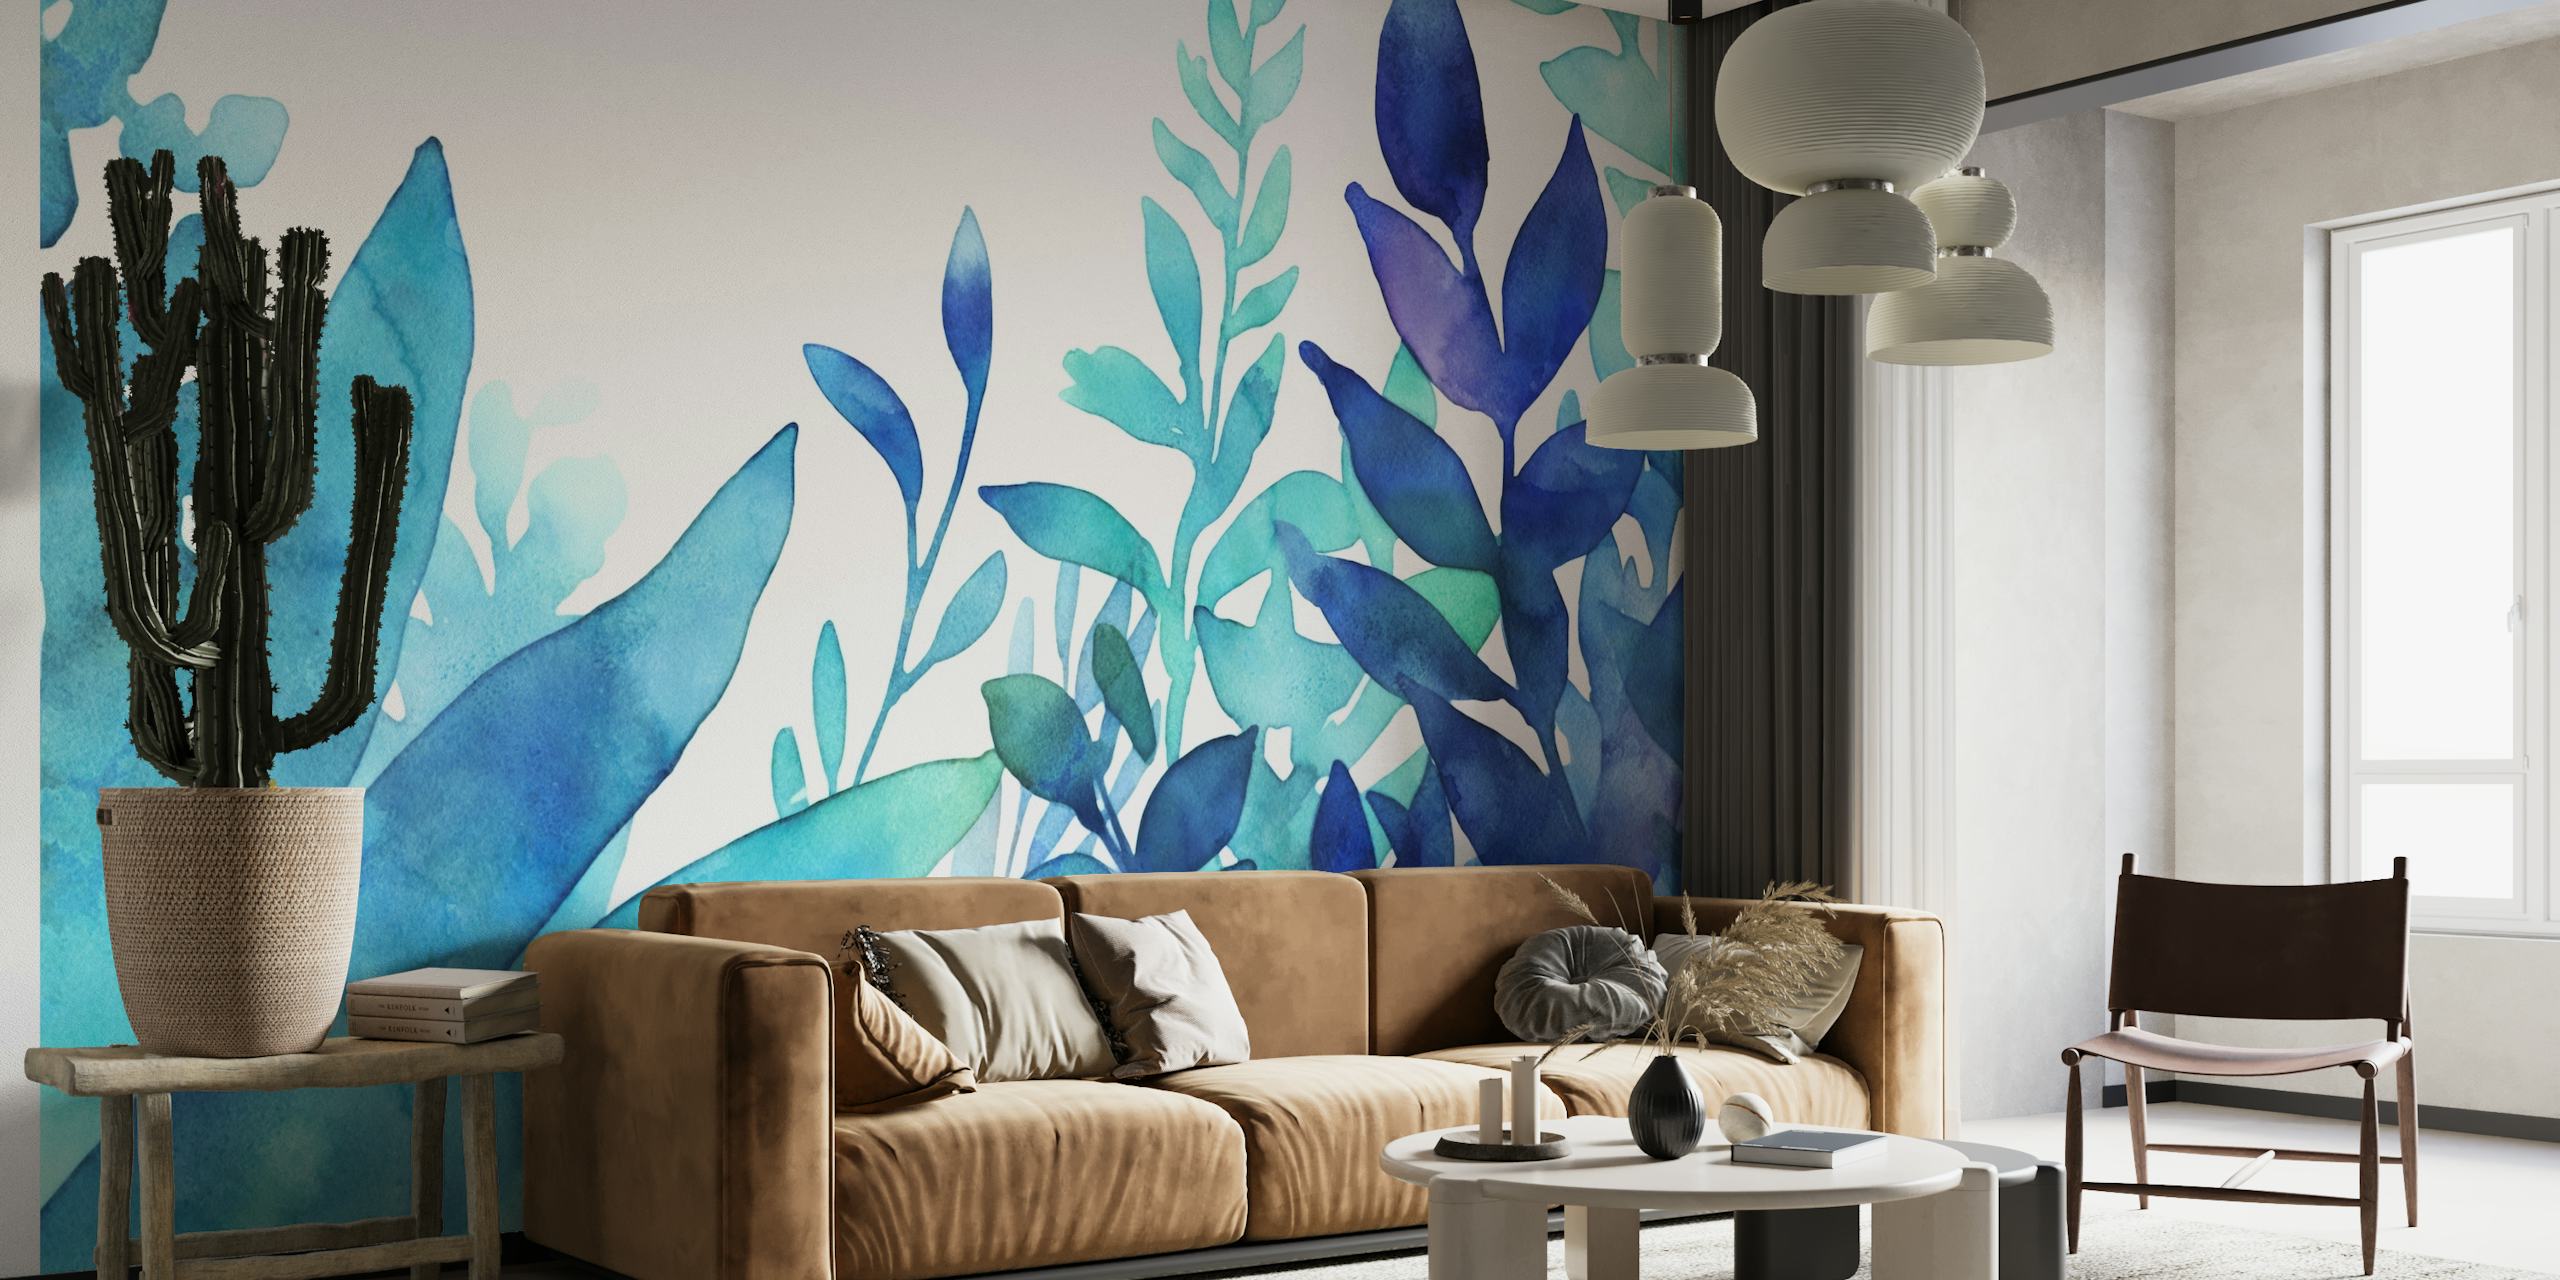 Uma exibição exuberante de folhagem em aquarela turquesa e azul para um mural de parede tranquilo.